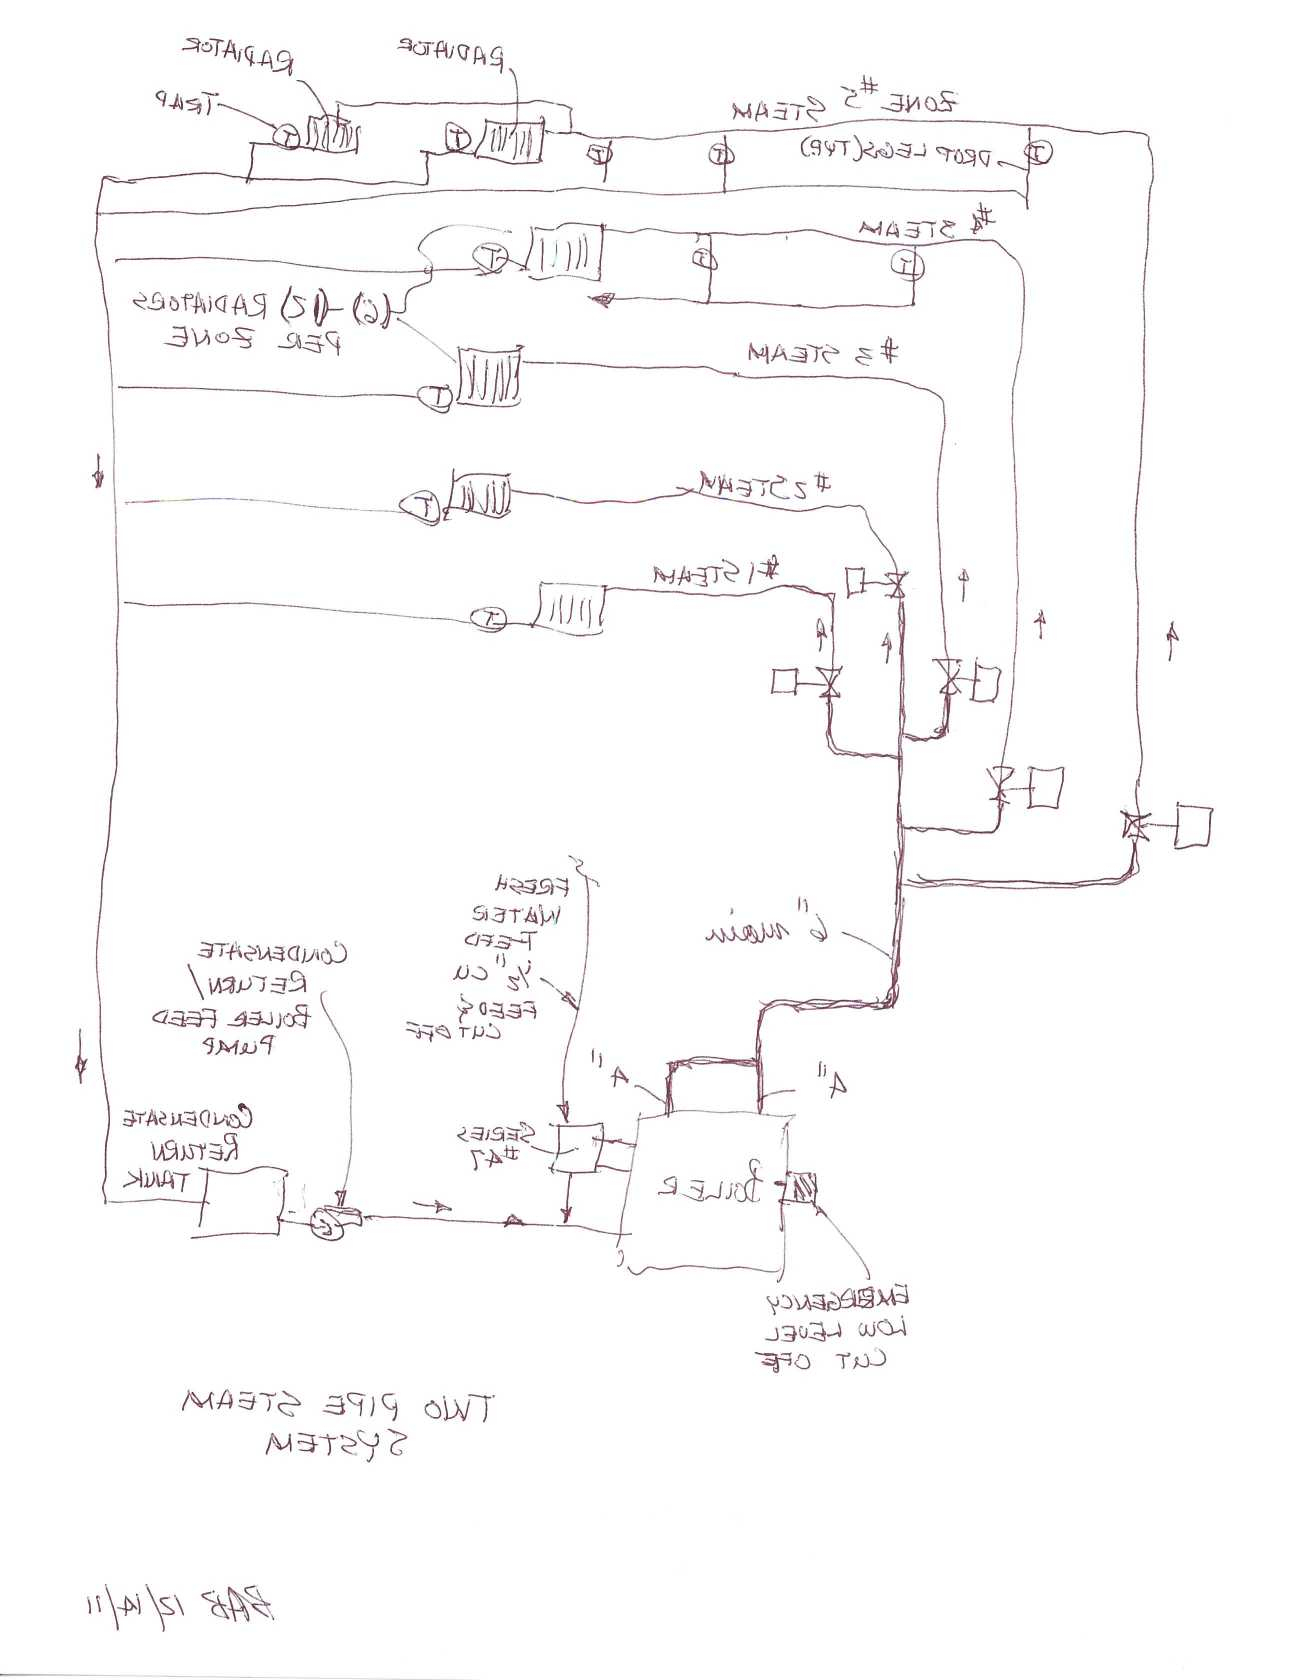 Mcdonnell Miller 67 Wiring Diagram | Schematic Diagram - Mcdonnell Miller Low Water Cutoff Wiring Diagram